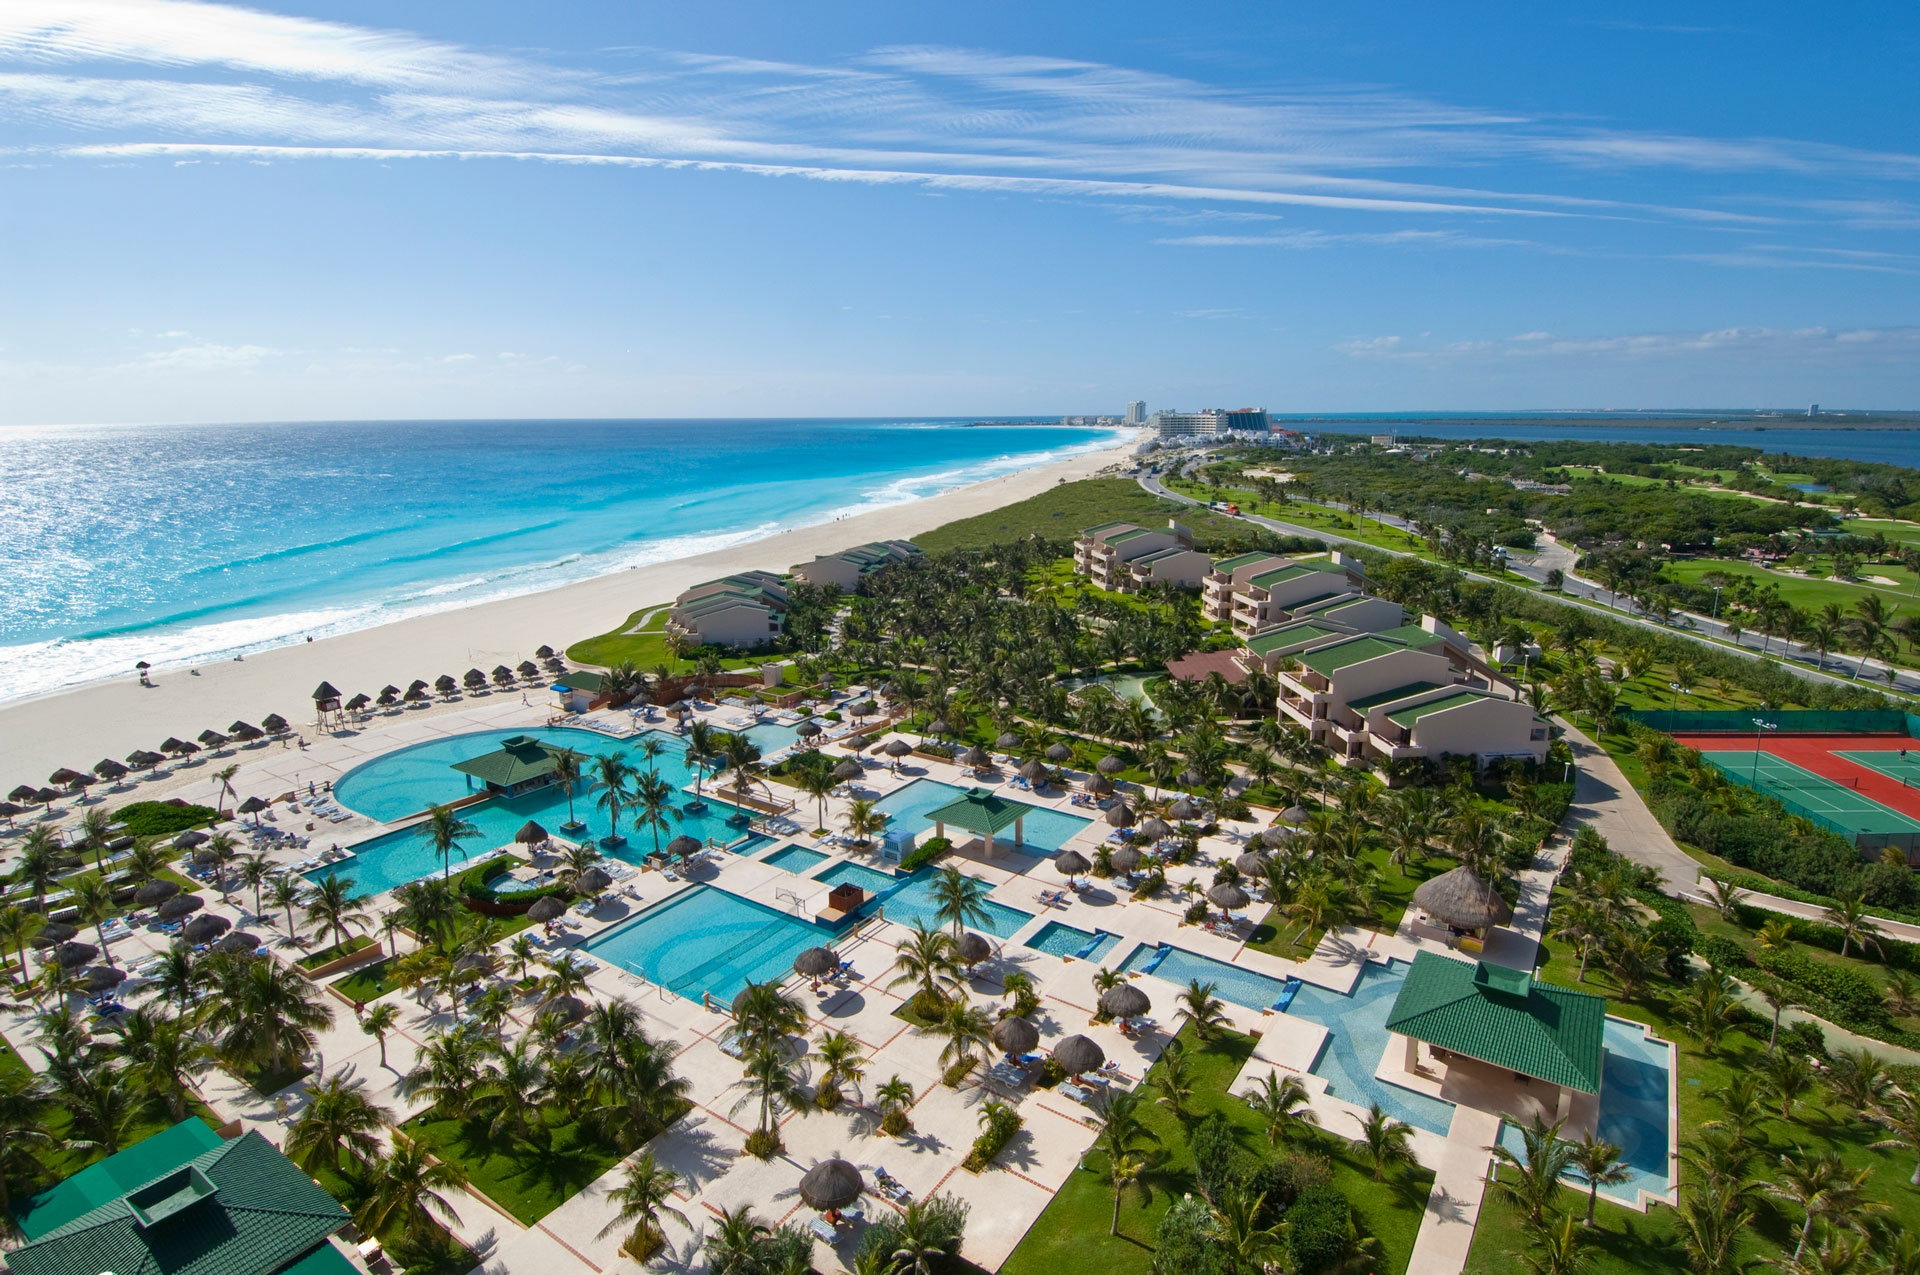 Iberostar Cancun – Cancun – Iberostar Cancun Hotel Specials